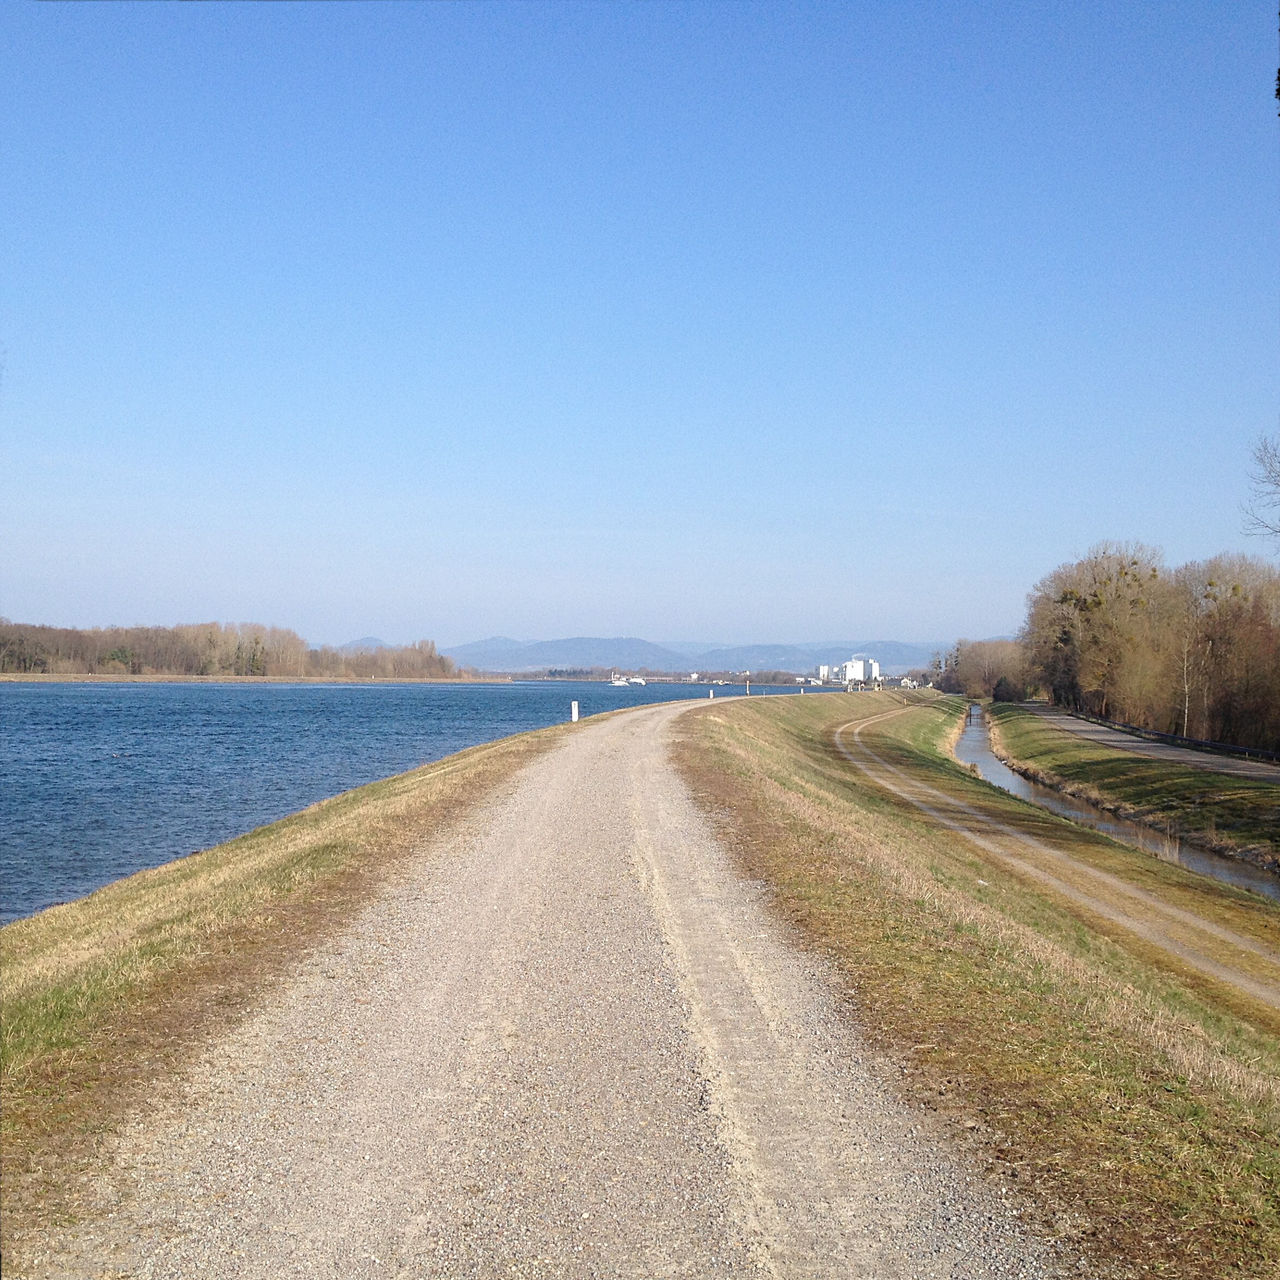 Blick vom Rheindamm flussaufwärts, links tiefblauer Fluss, Mitte graubrauner Weg, rechts Ufergewächs, unbelaubt.